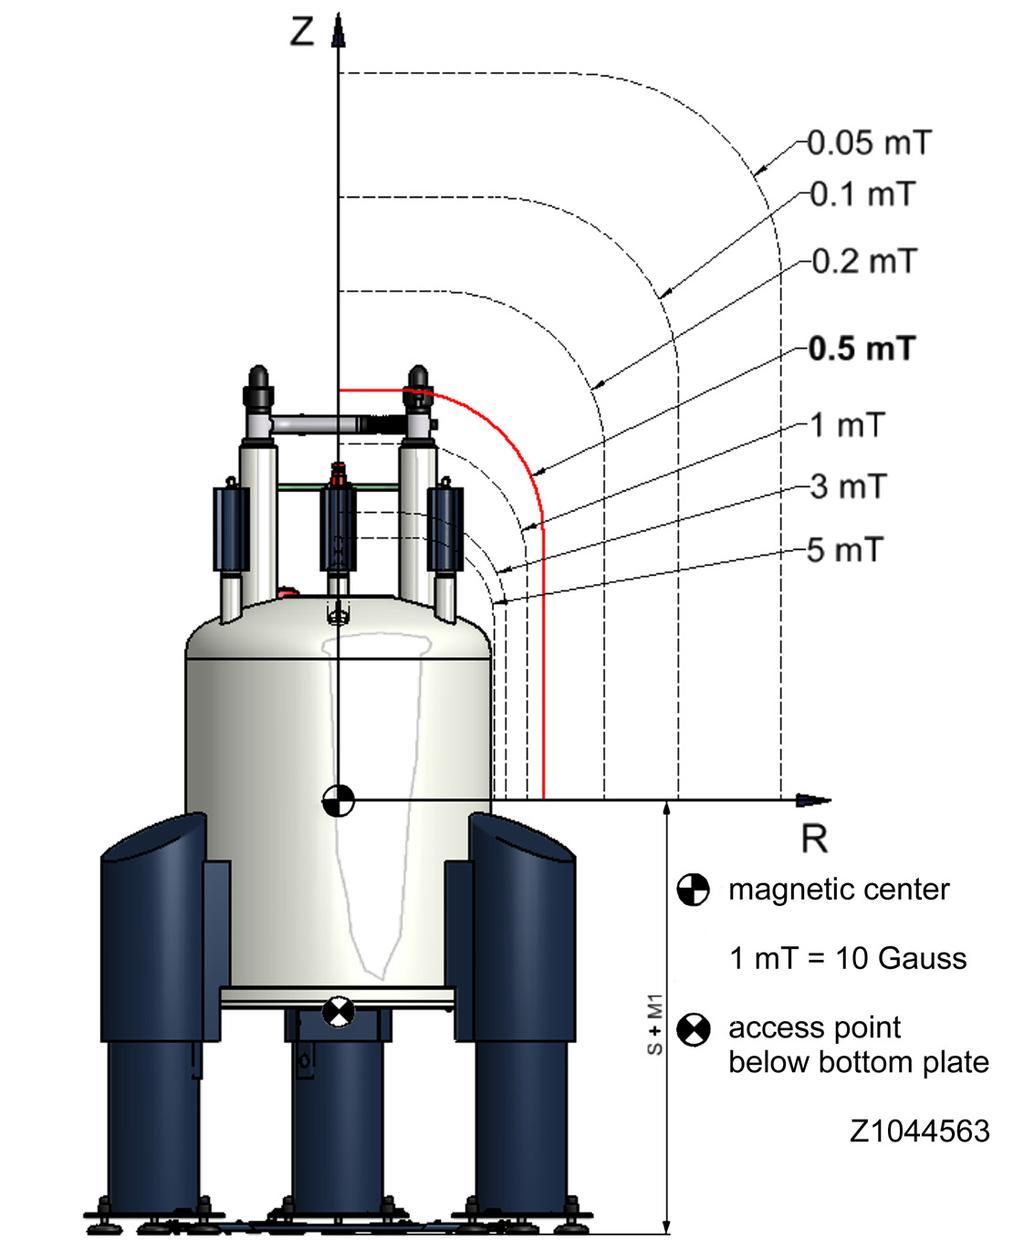 Technical Data MS 300 154 Ascend DNP Fringe Field Plot Figure A.9: Fringe Field Plot Fringe Field Unit R max Unit Z max Unit 200 mt inside cryostat m 0.52 m 5.0 mt 0.66 m 1.11 m 3.0 mt 0.72 m 1.